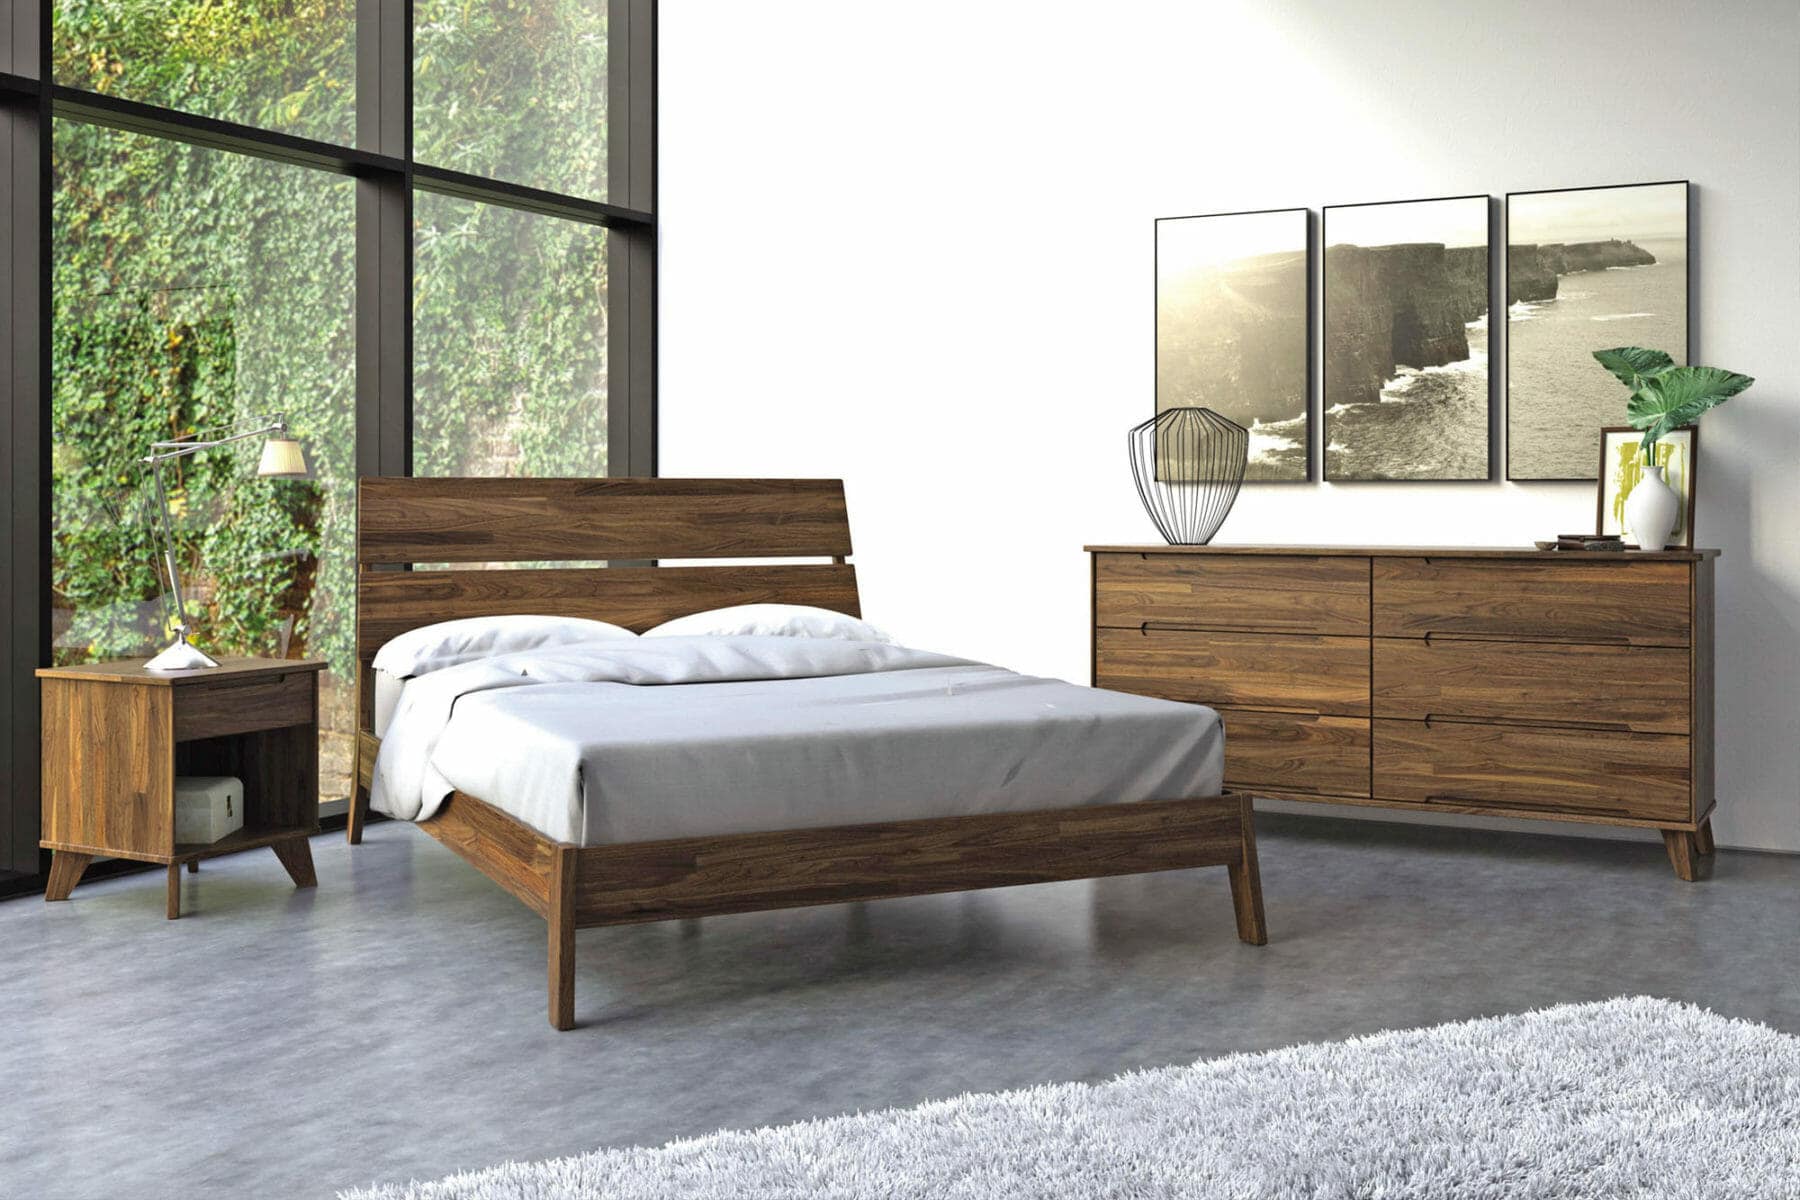 Mid Century Modern Bedroom set with wooden bedframe